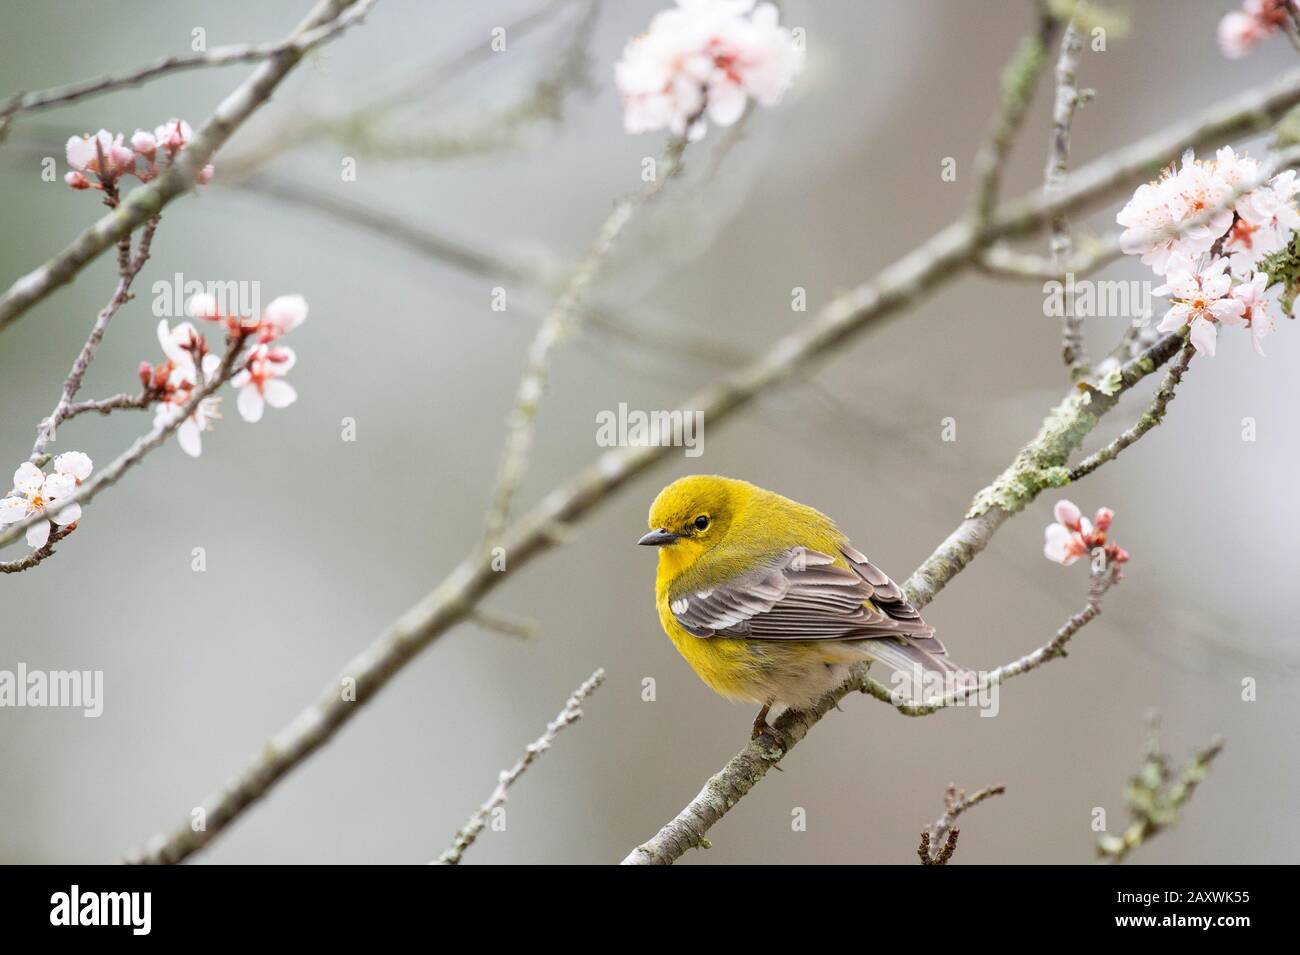 Leuchtend gelber Kiefer-Warbler thront im Frühjahr in einem blühenden Baum im von Sotf überhauenen Licht. Stockfoto